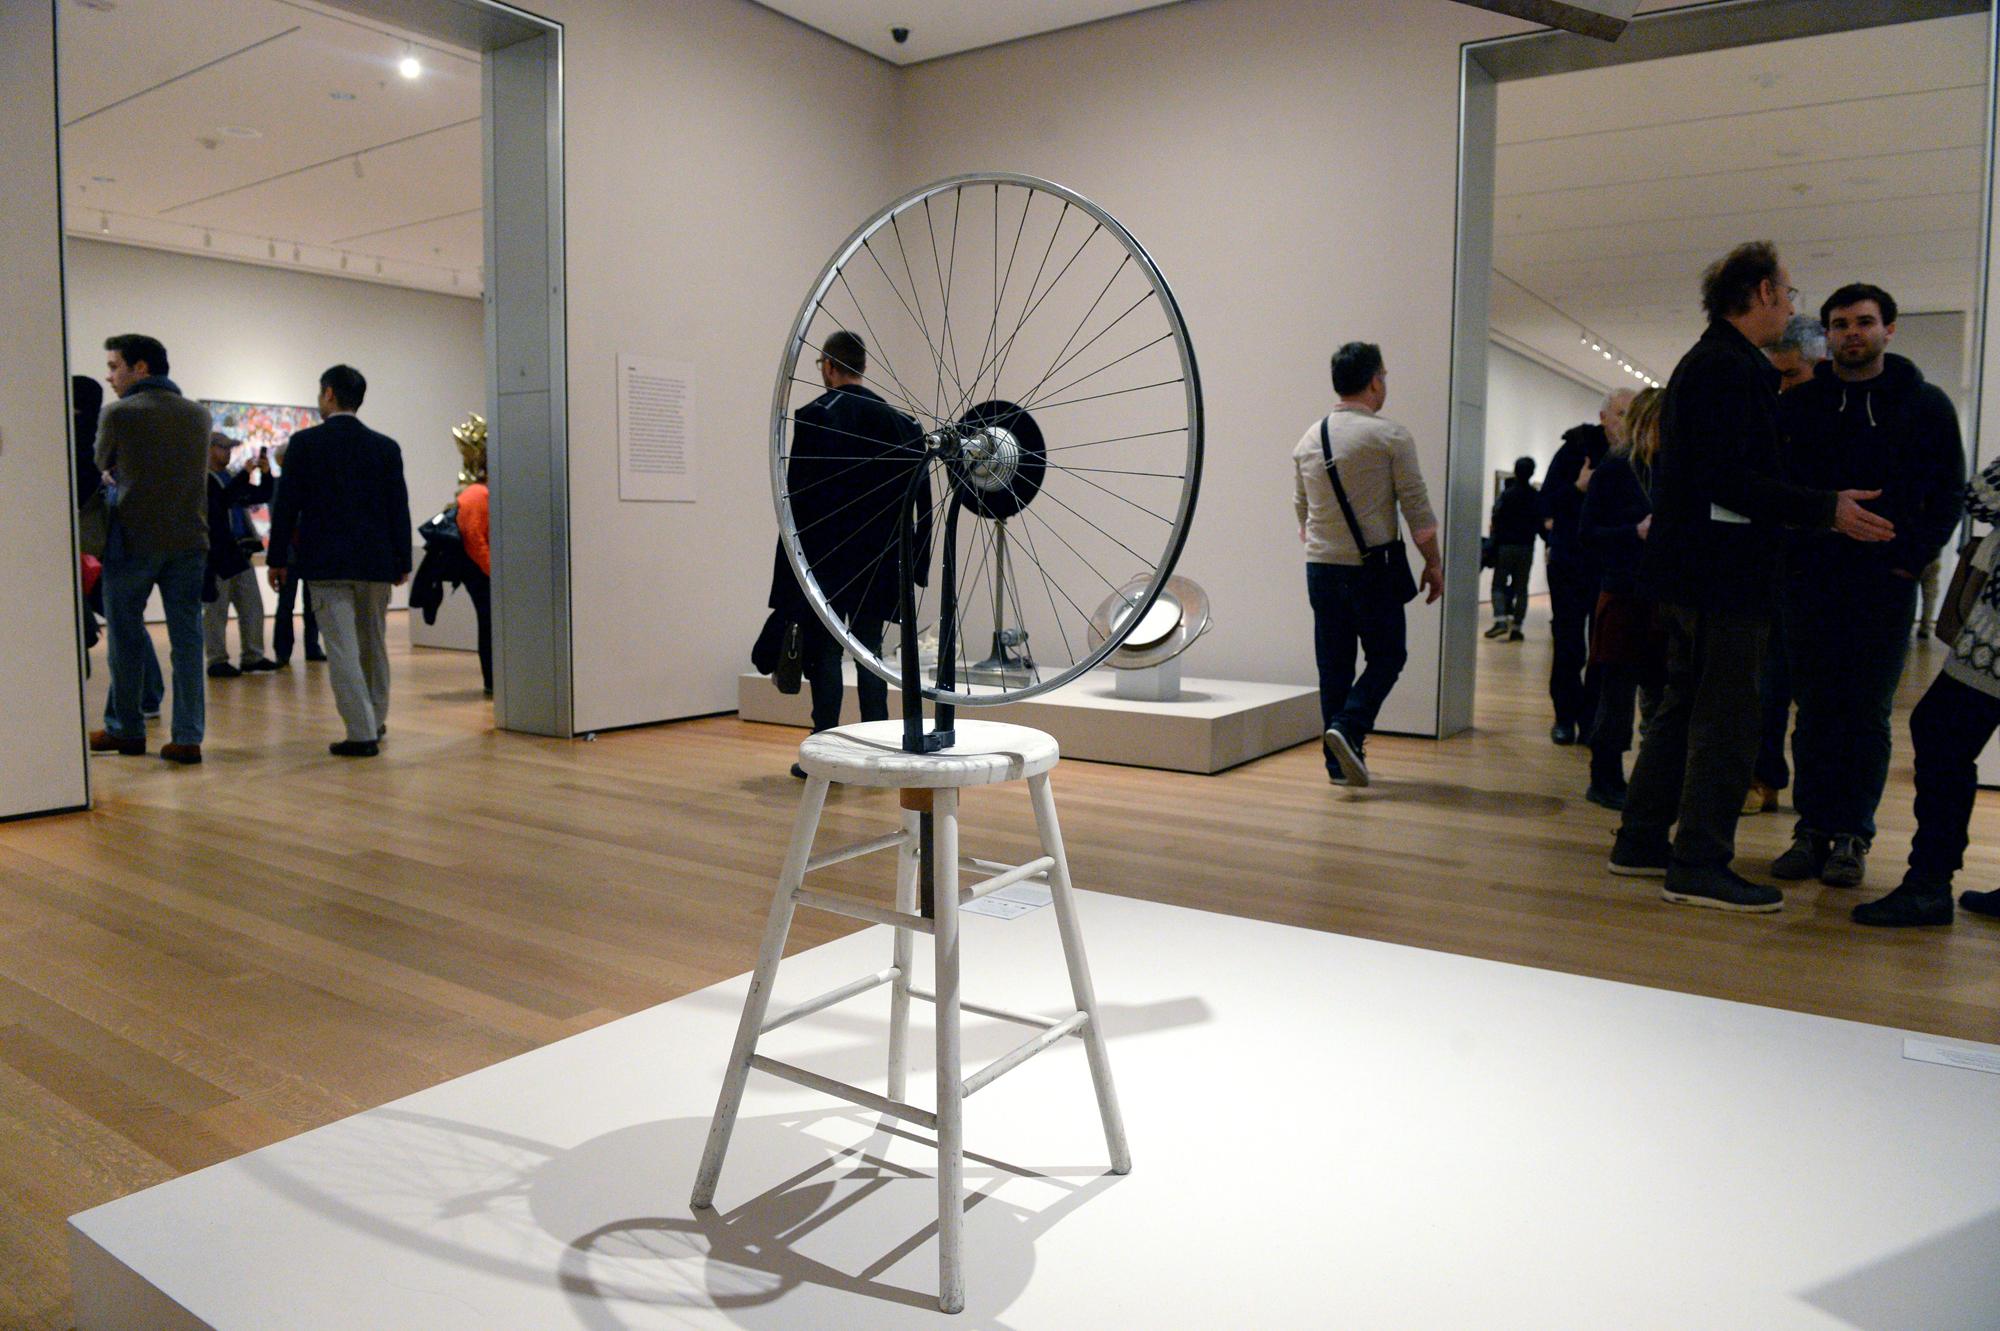 "Roue de bicyclette", un ready made de Marcel Duchamp, au Musée d'art moderne de New York. [Felix Hoerhager/dpa]